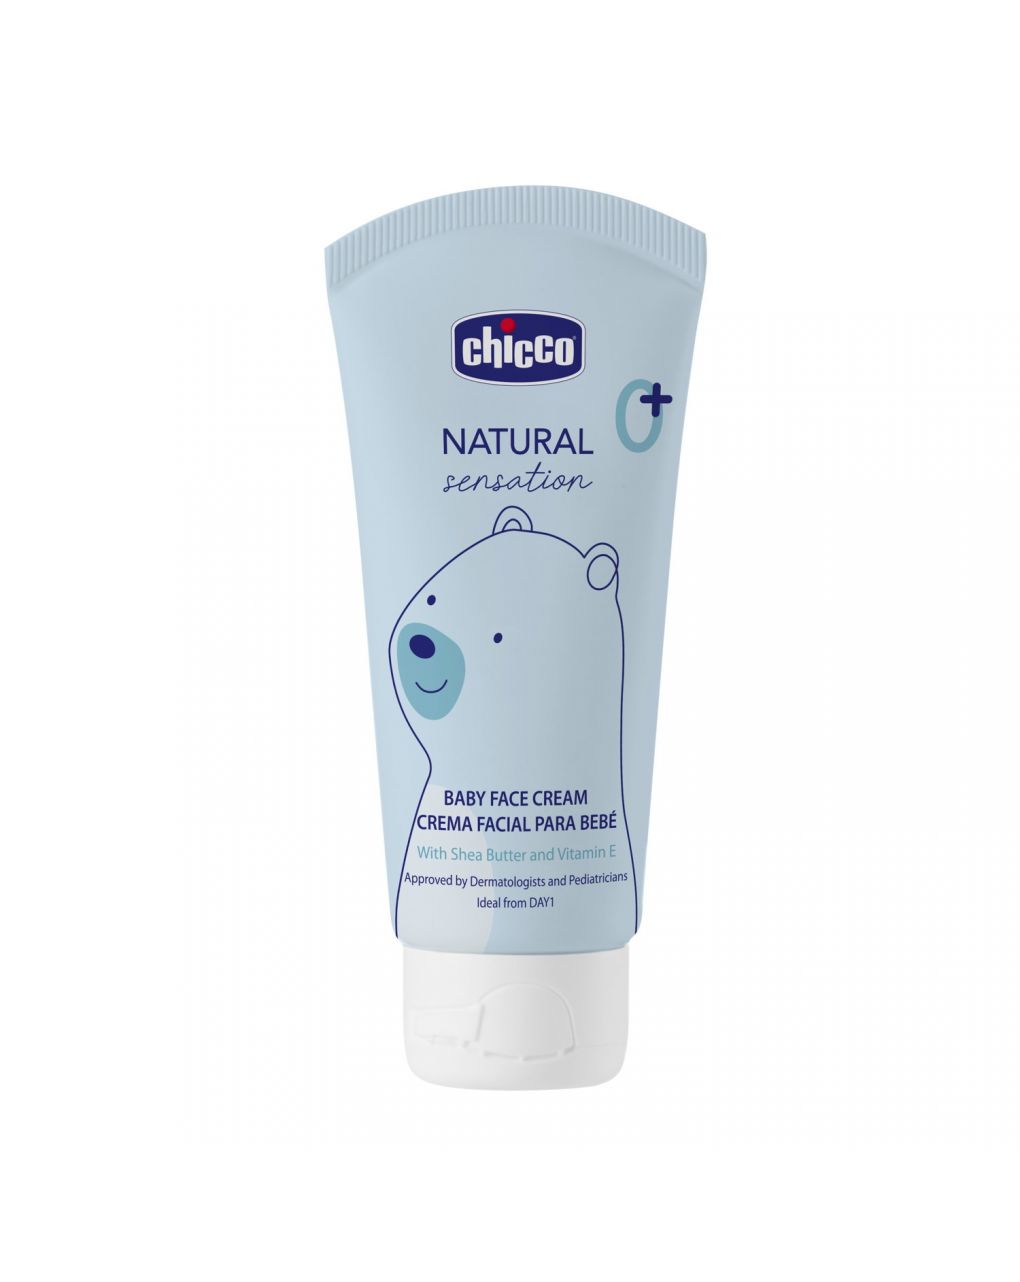 Baby crema viso natural sensation 50ml - chicco - Chicco